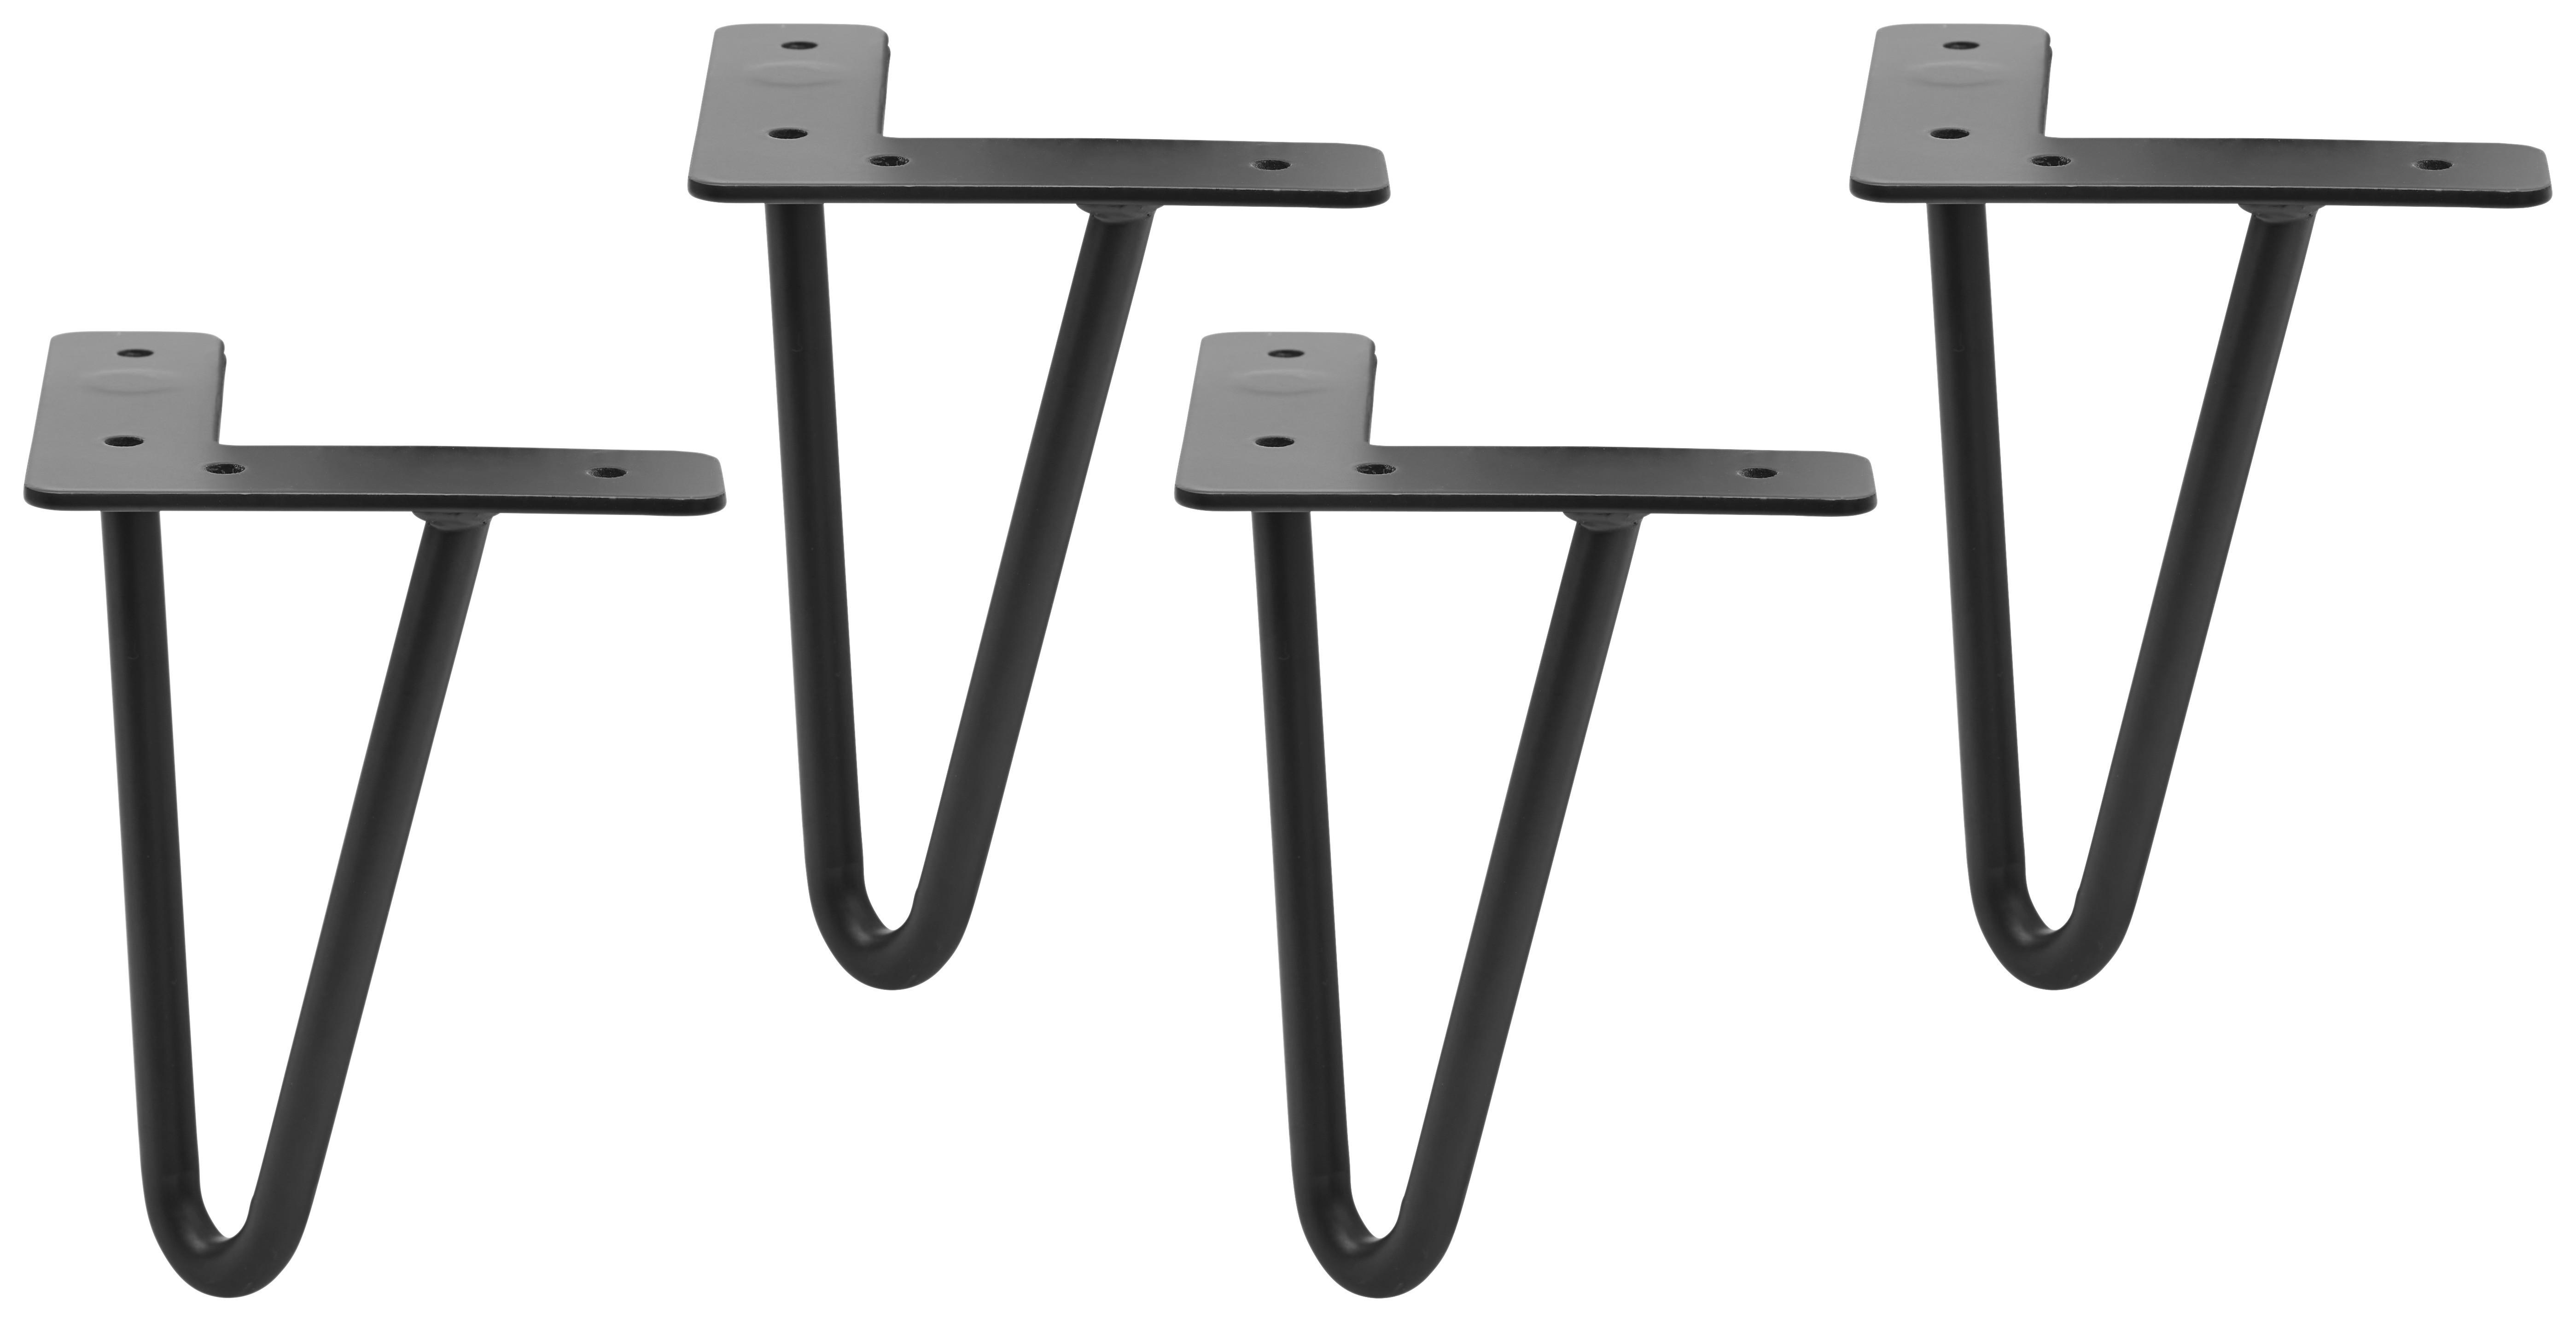 Fußset in Grau/Schwarz,  4-teilig - Schwarz/Grau, MODERN (11/15/11cm) - Based